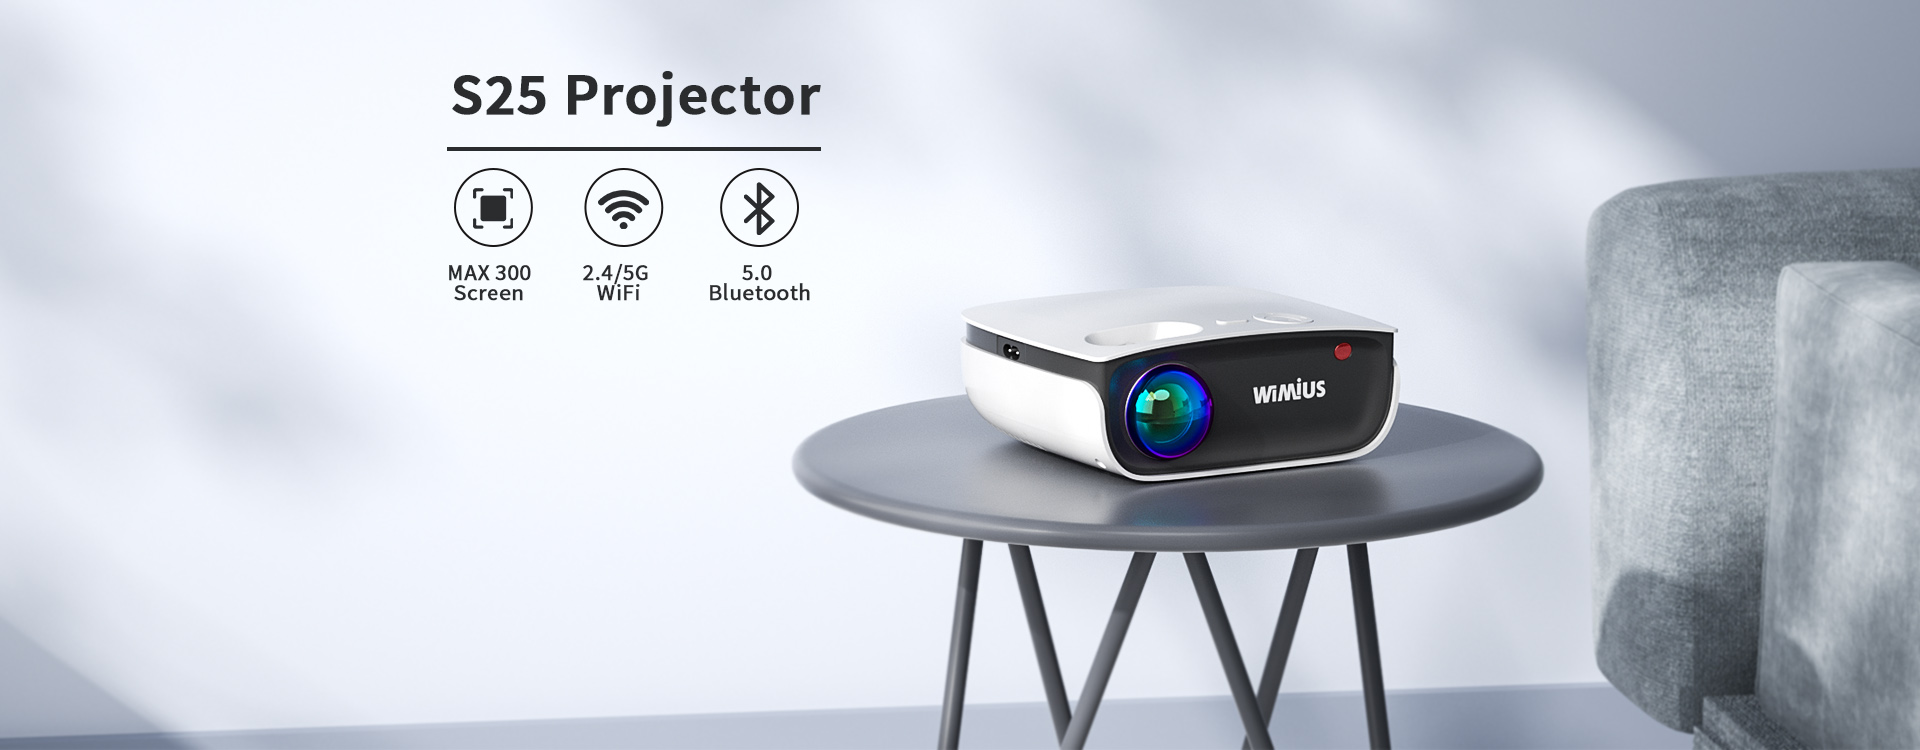 Proiettore WIMIUS K5 Mini proiettore portatile con WiFi Bluetooth nativo  1080P 4k videoproiettore Full HD per Home Theater - AliExpress